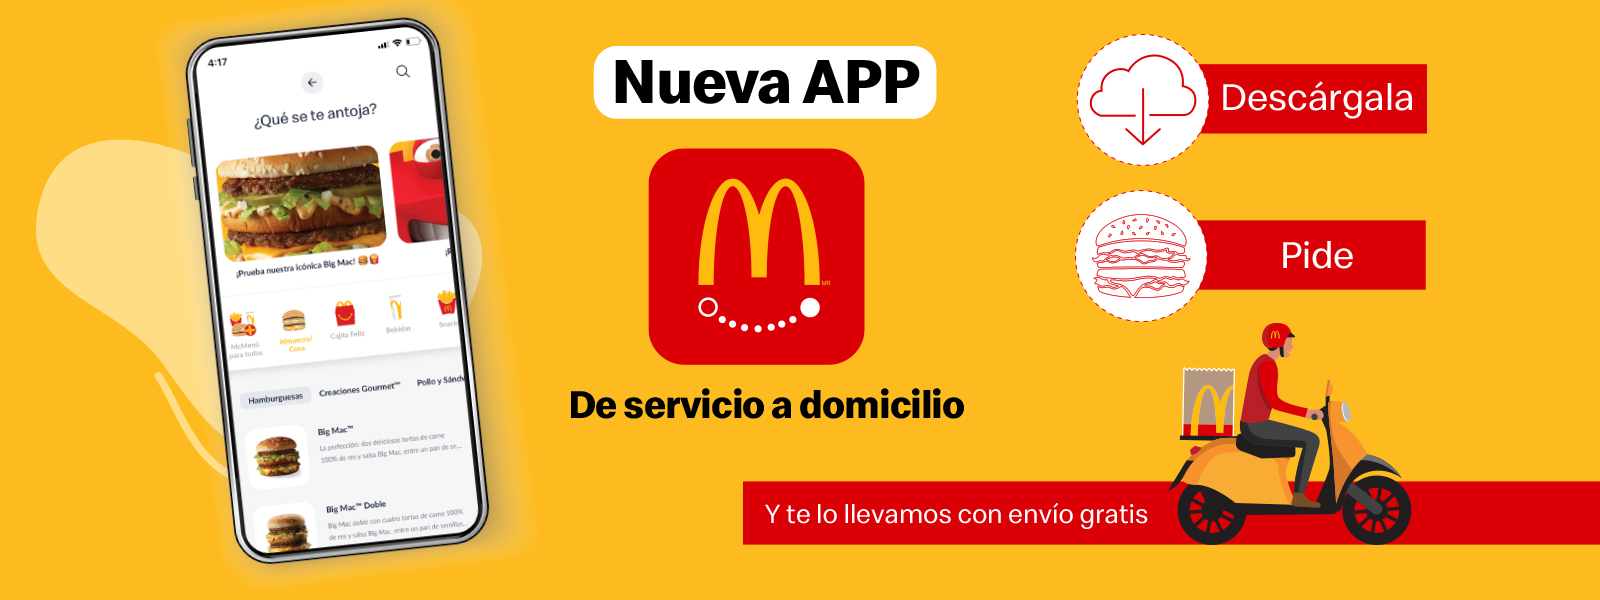 McDonald’s lanza su nueva APP de Express  para servicio a domicilio en Guatremala